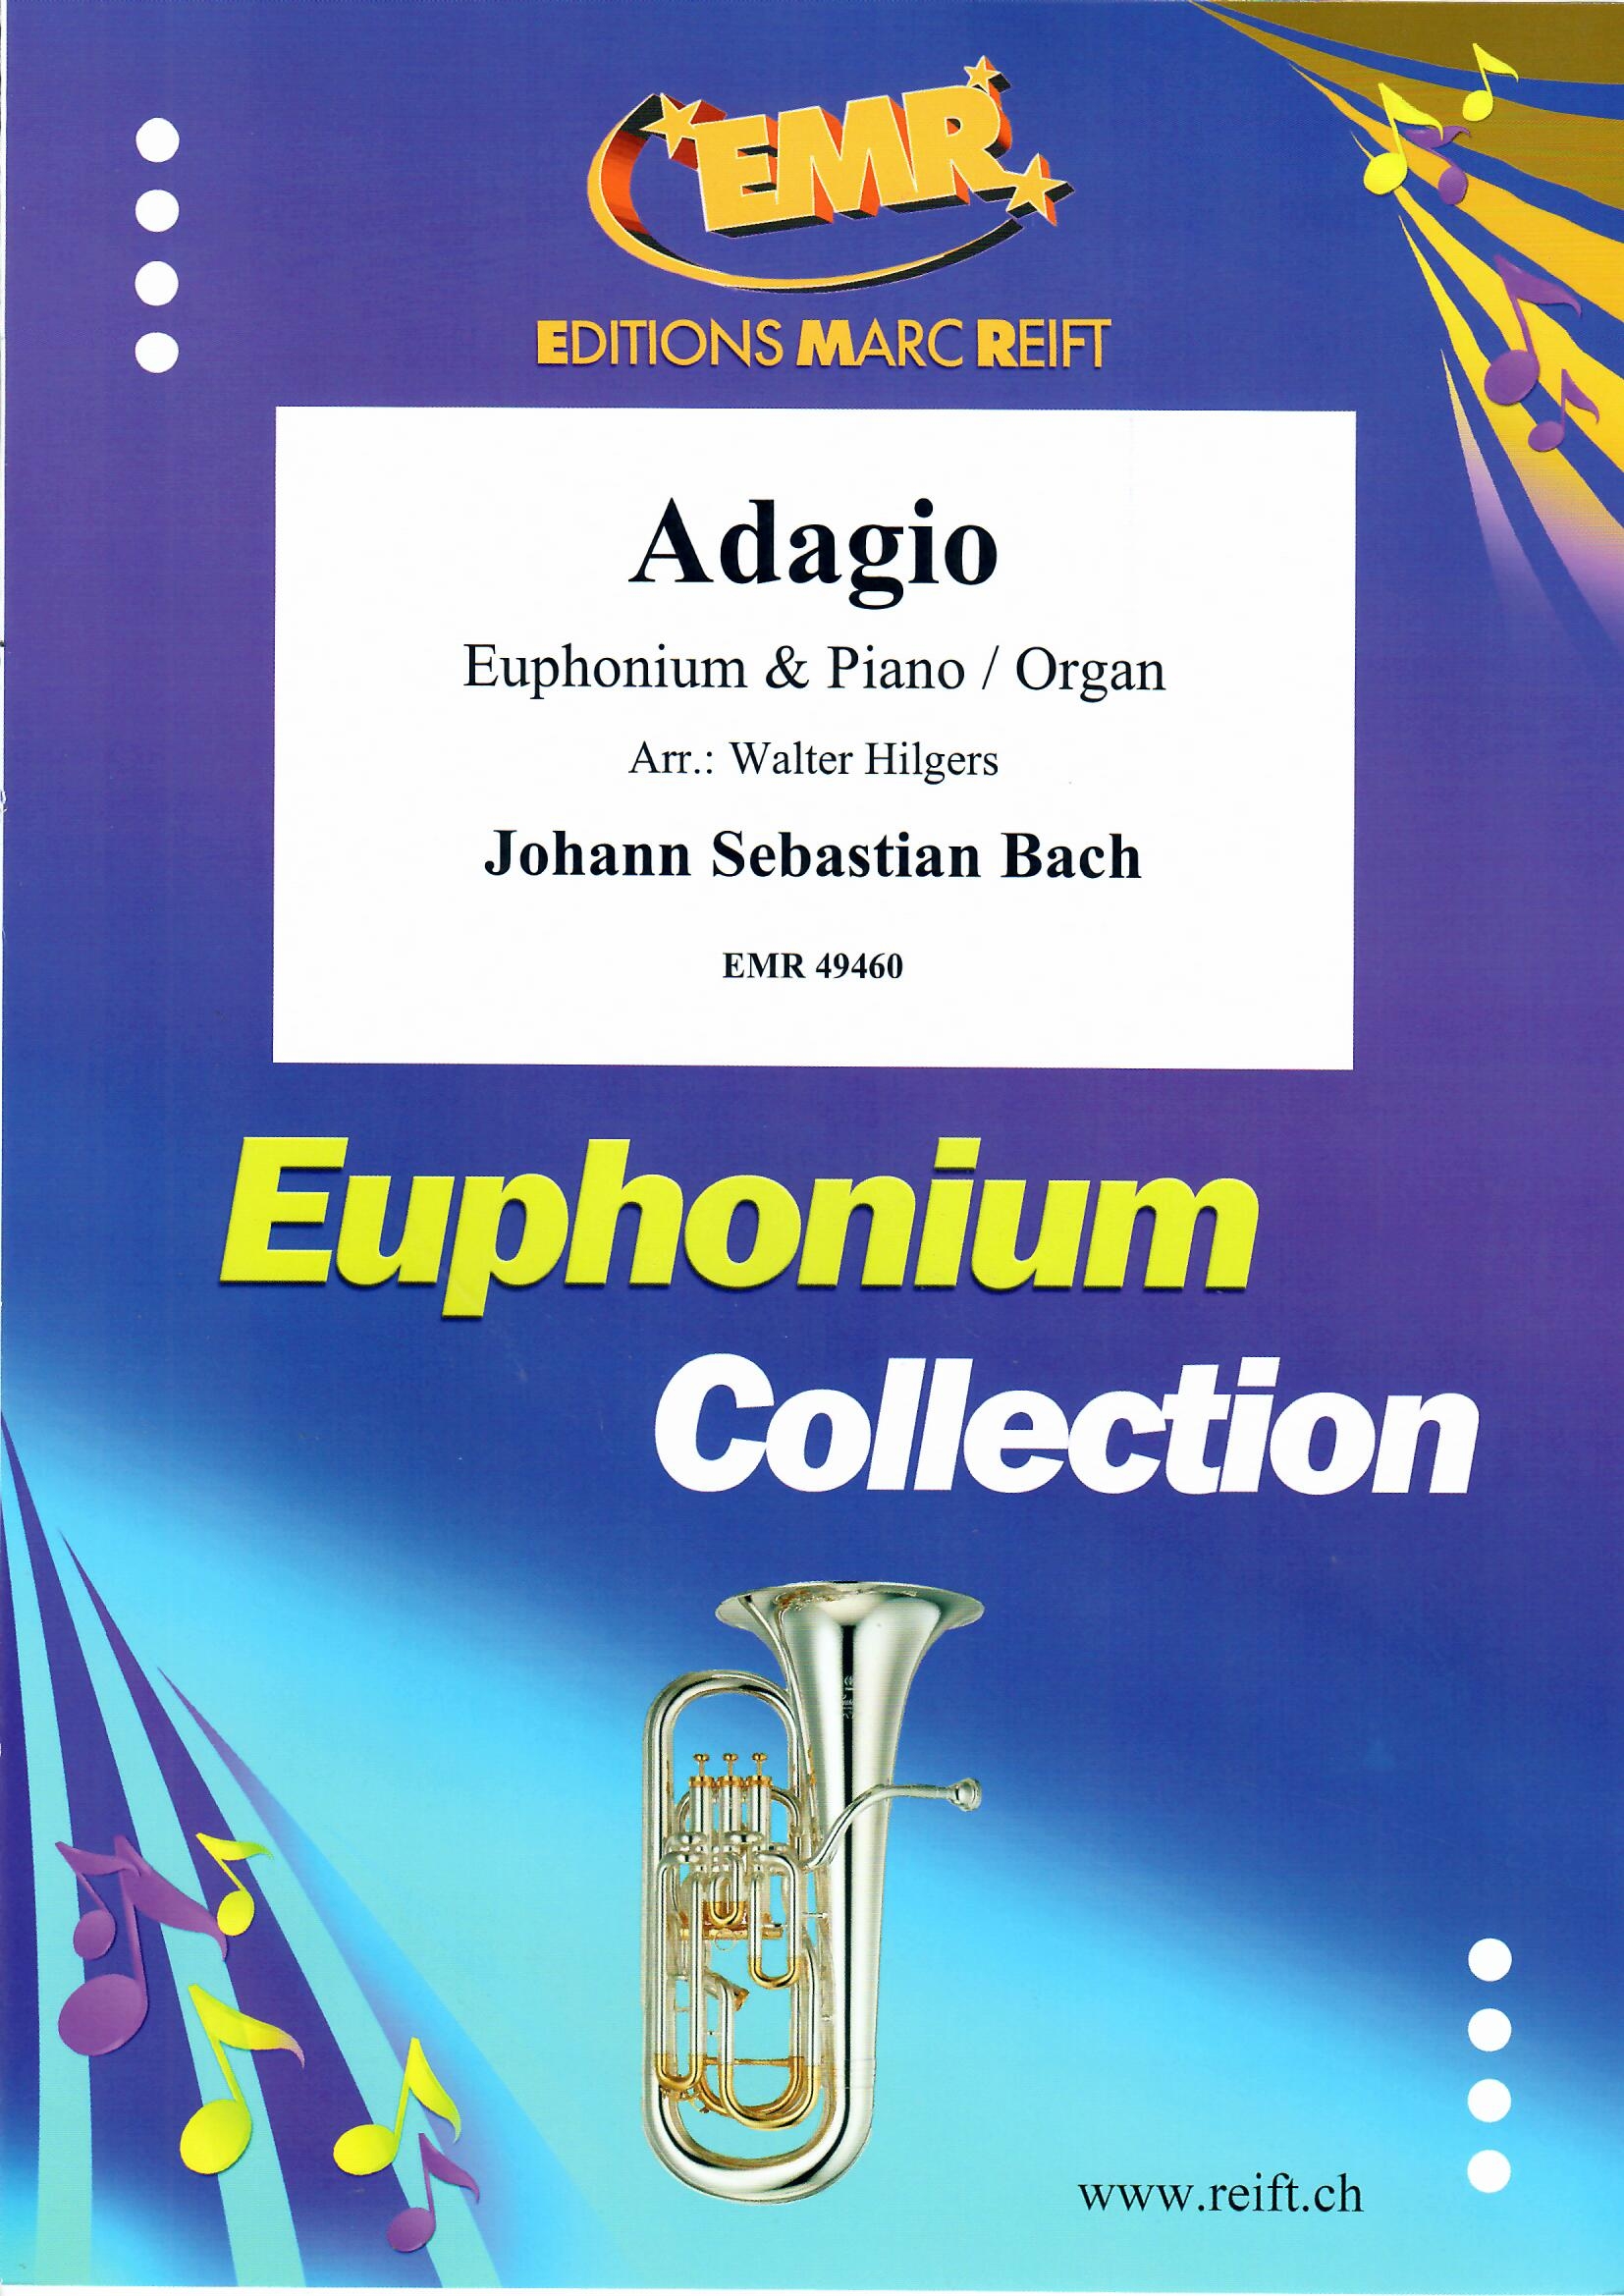 ADAGIO - Euphonium & Piano